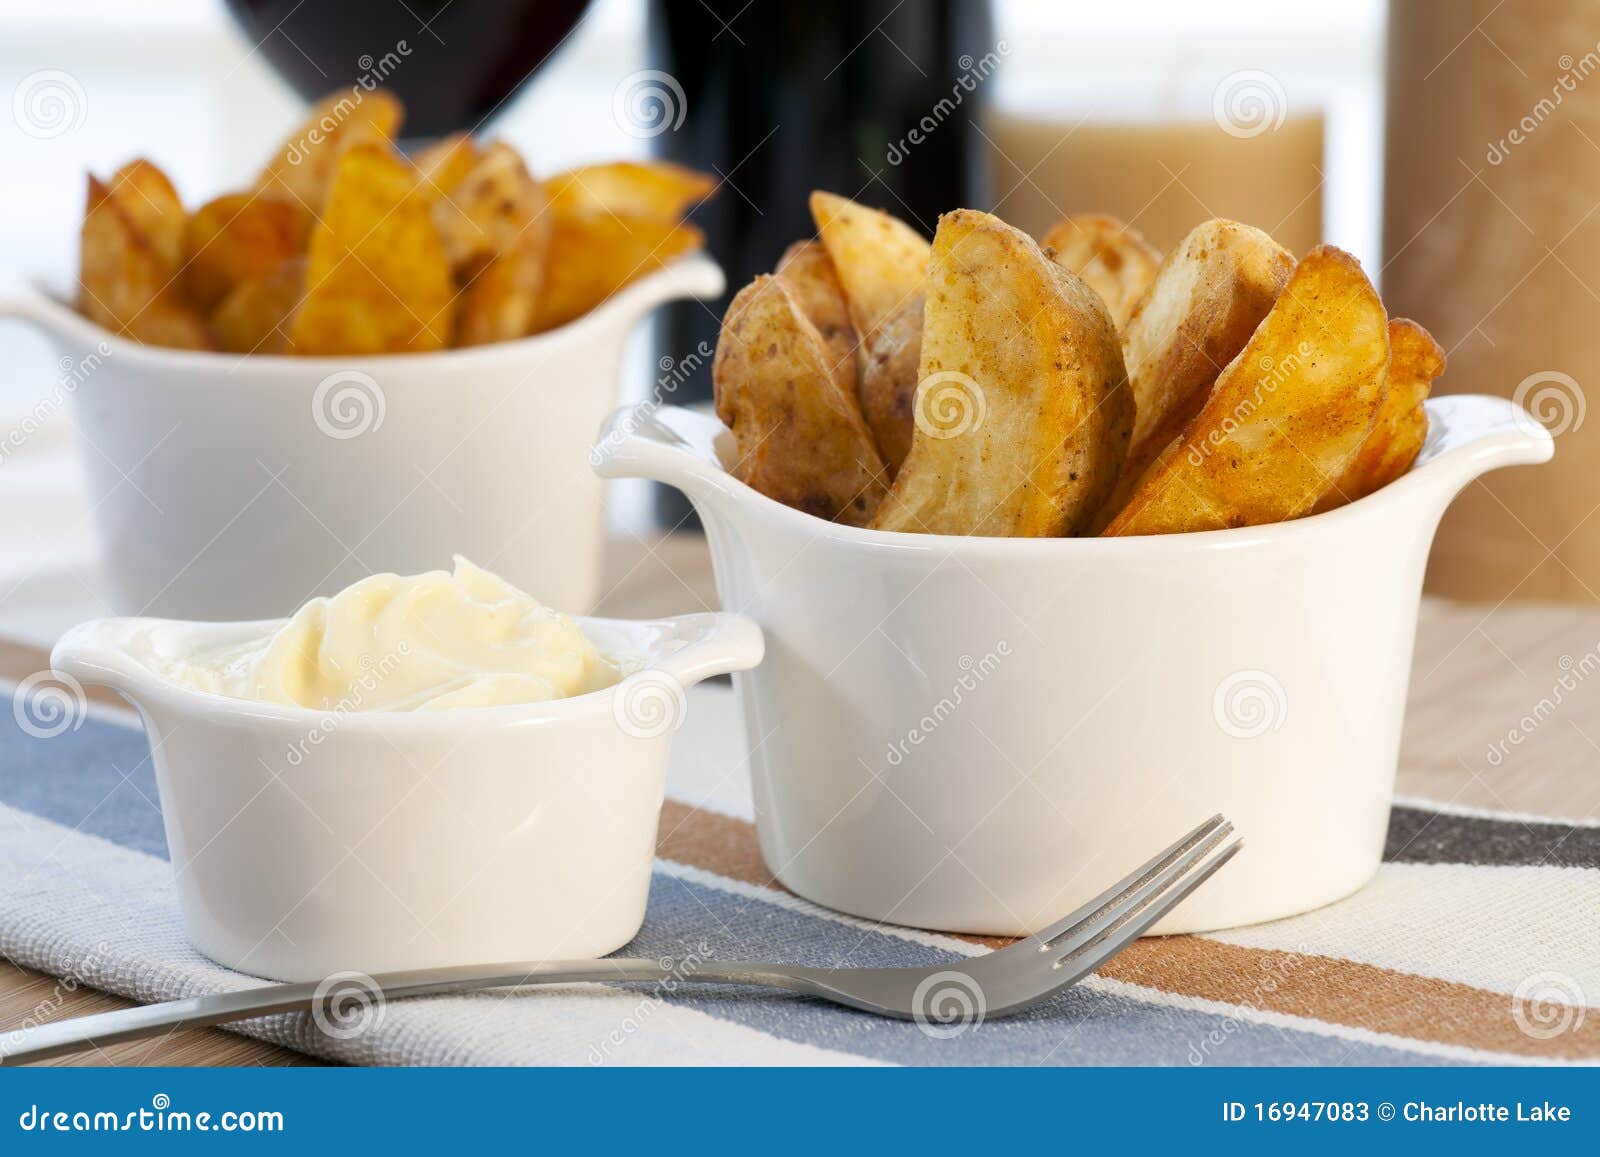 patatas bravas with garlic mayonnaise